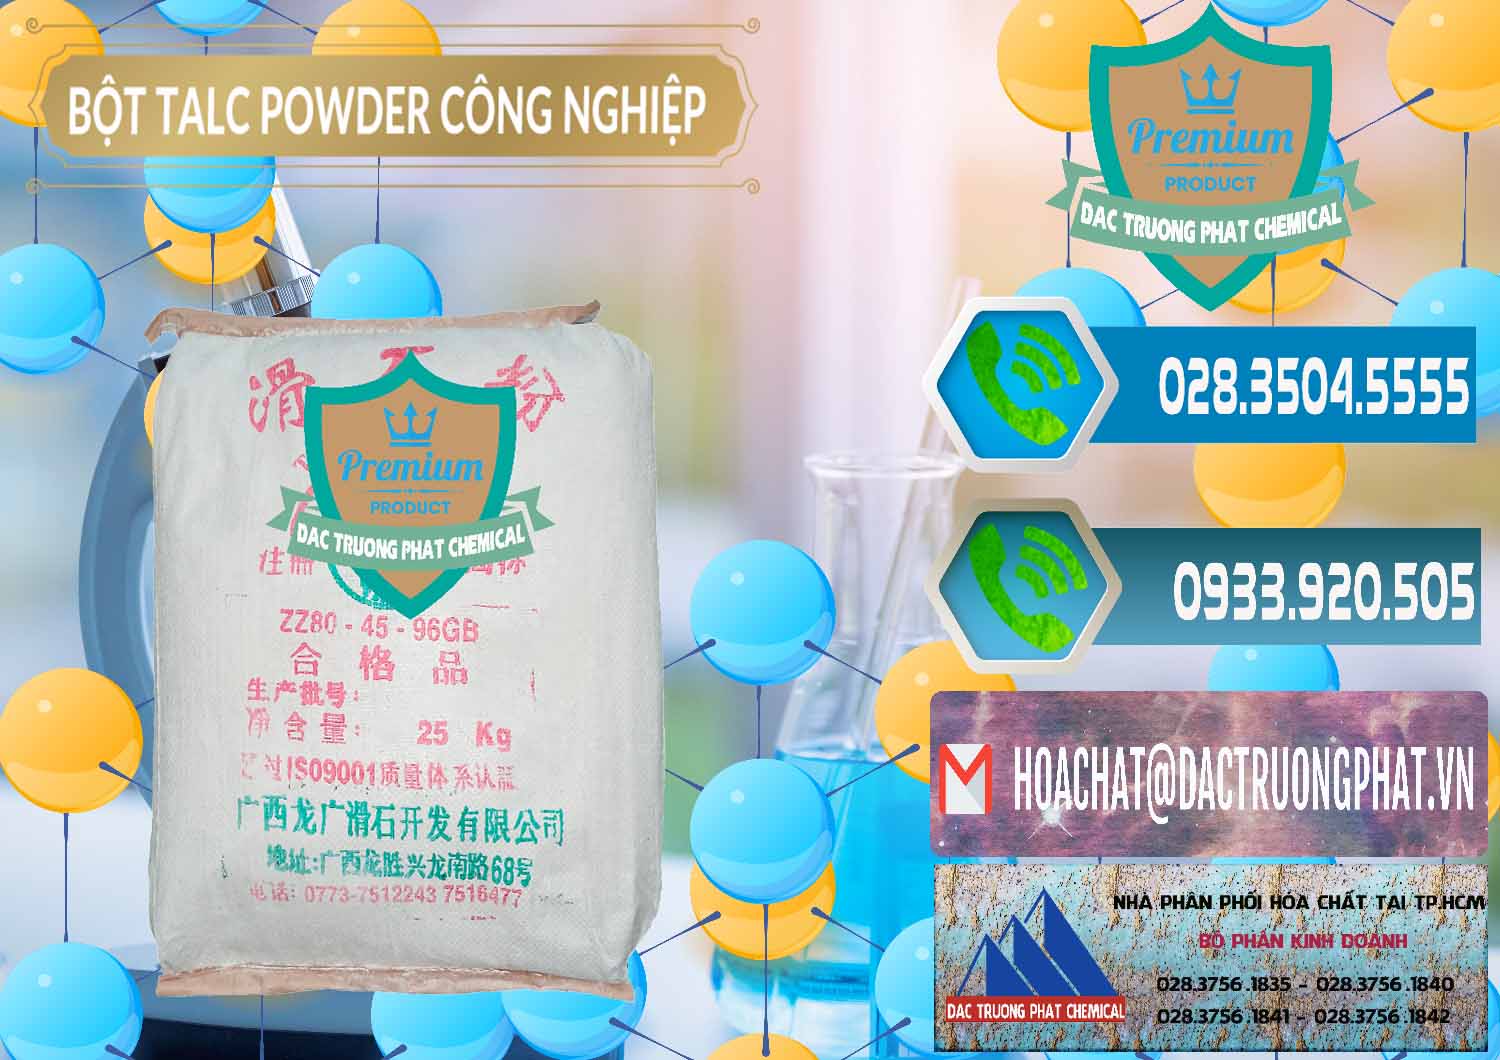 Cty chuyên bán & phân phối Bột Talc Powder Công Nghiệp Trung Quốc China - 0037 - Đơn vị cung cấp ( phân phối ) hóa chất tại TP.HCM - congtyhoachat.net